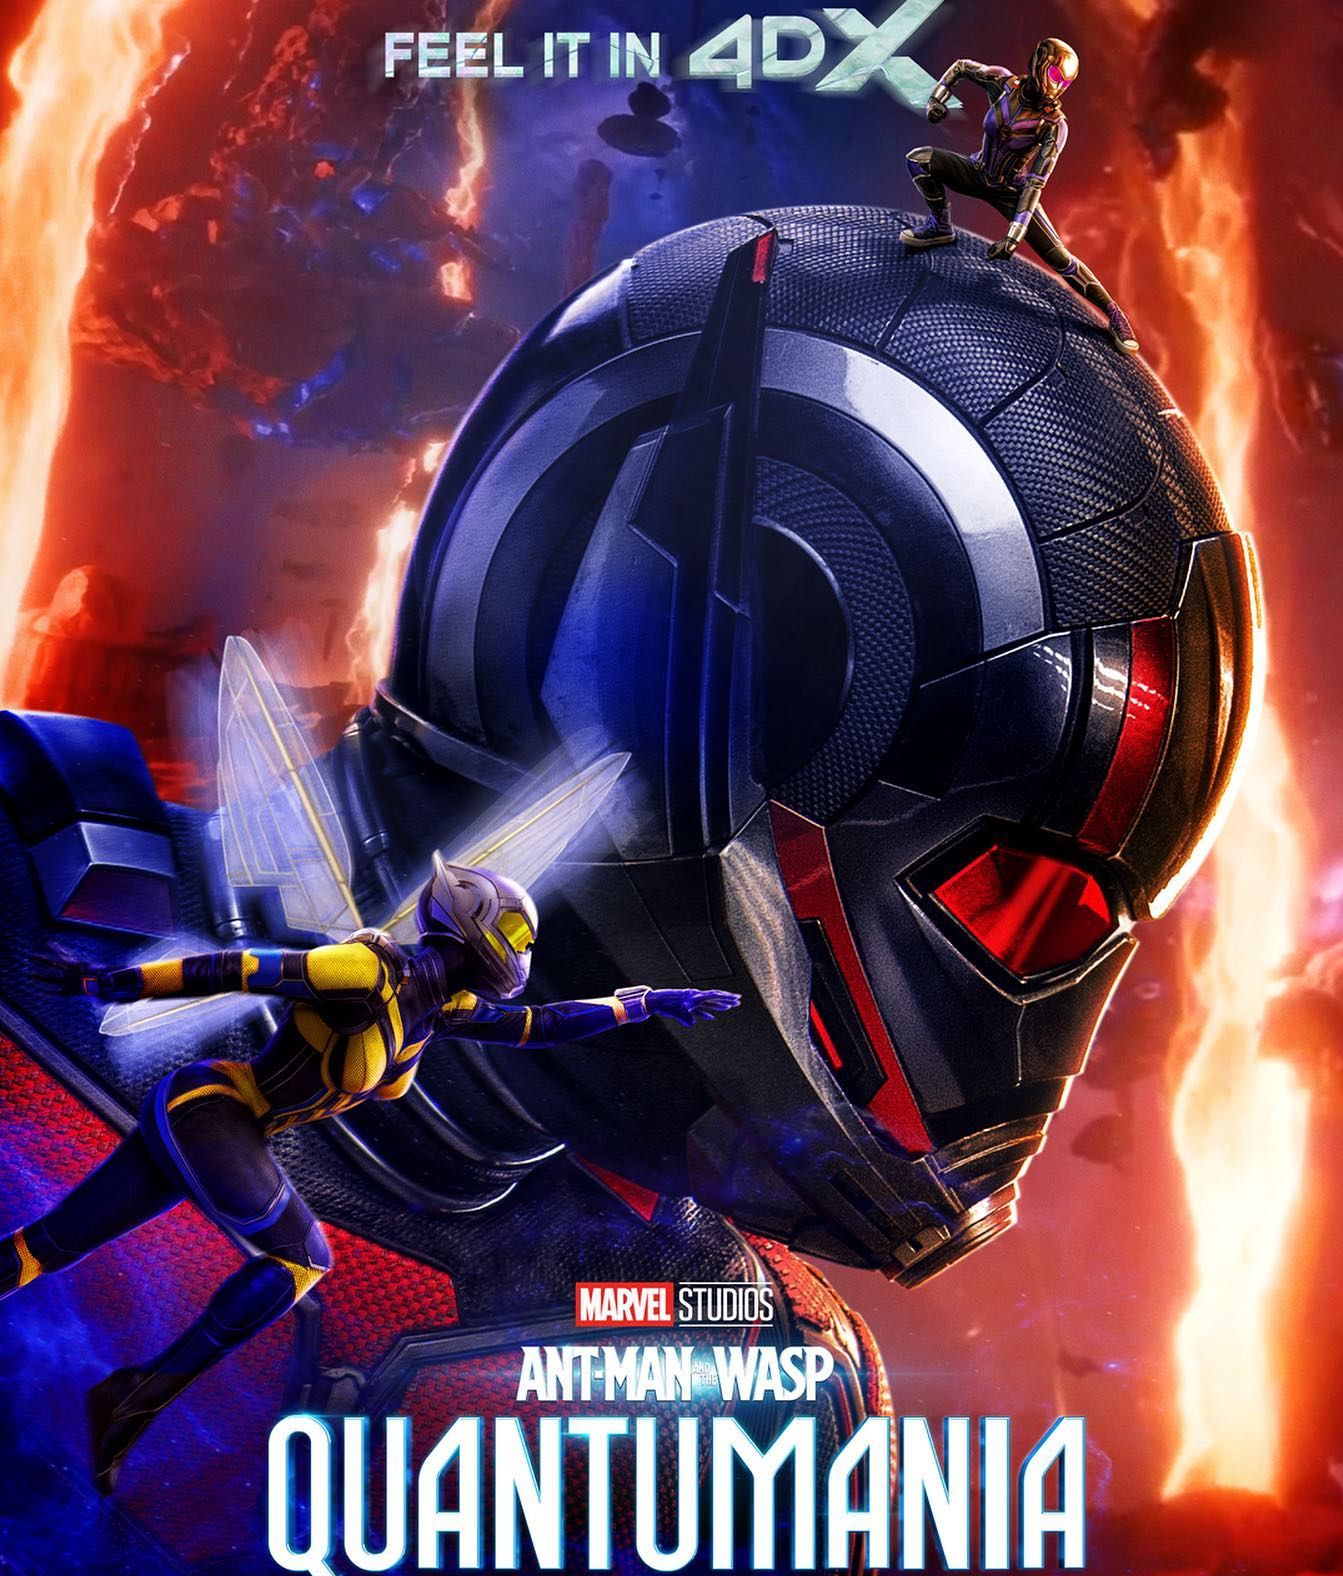 Tanggal Tayang Ant Man 3: Ant Man and The Wasp Quantumania 2023 di Indonesia, Catat Tanggalnya!